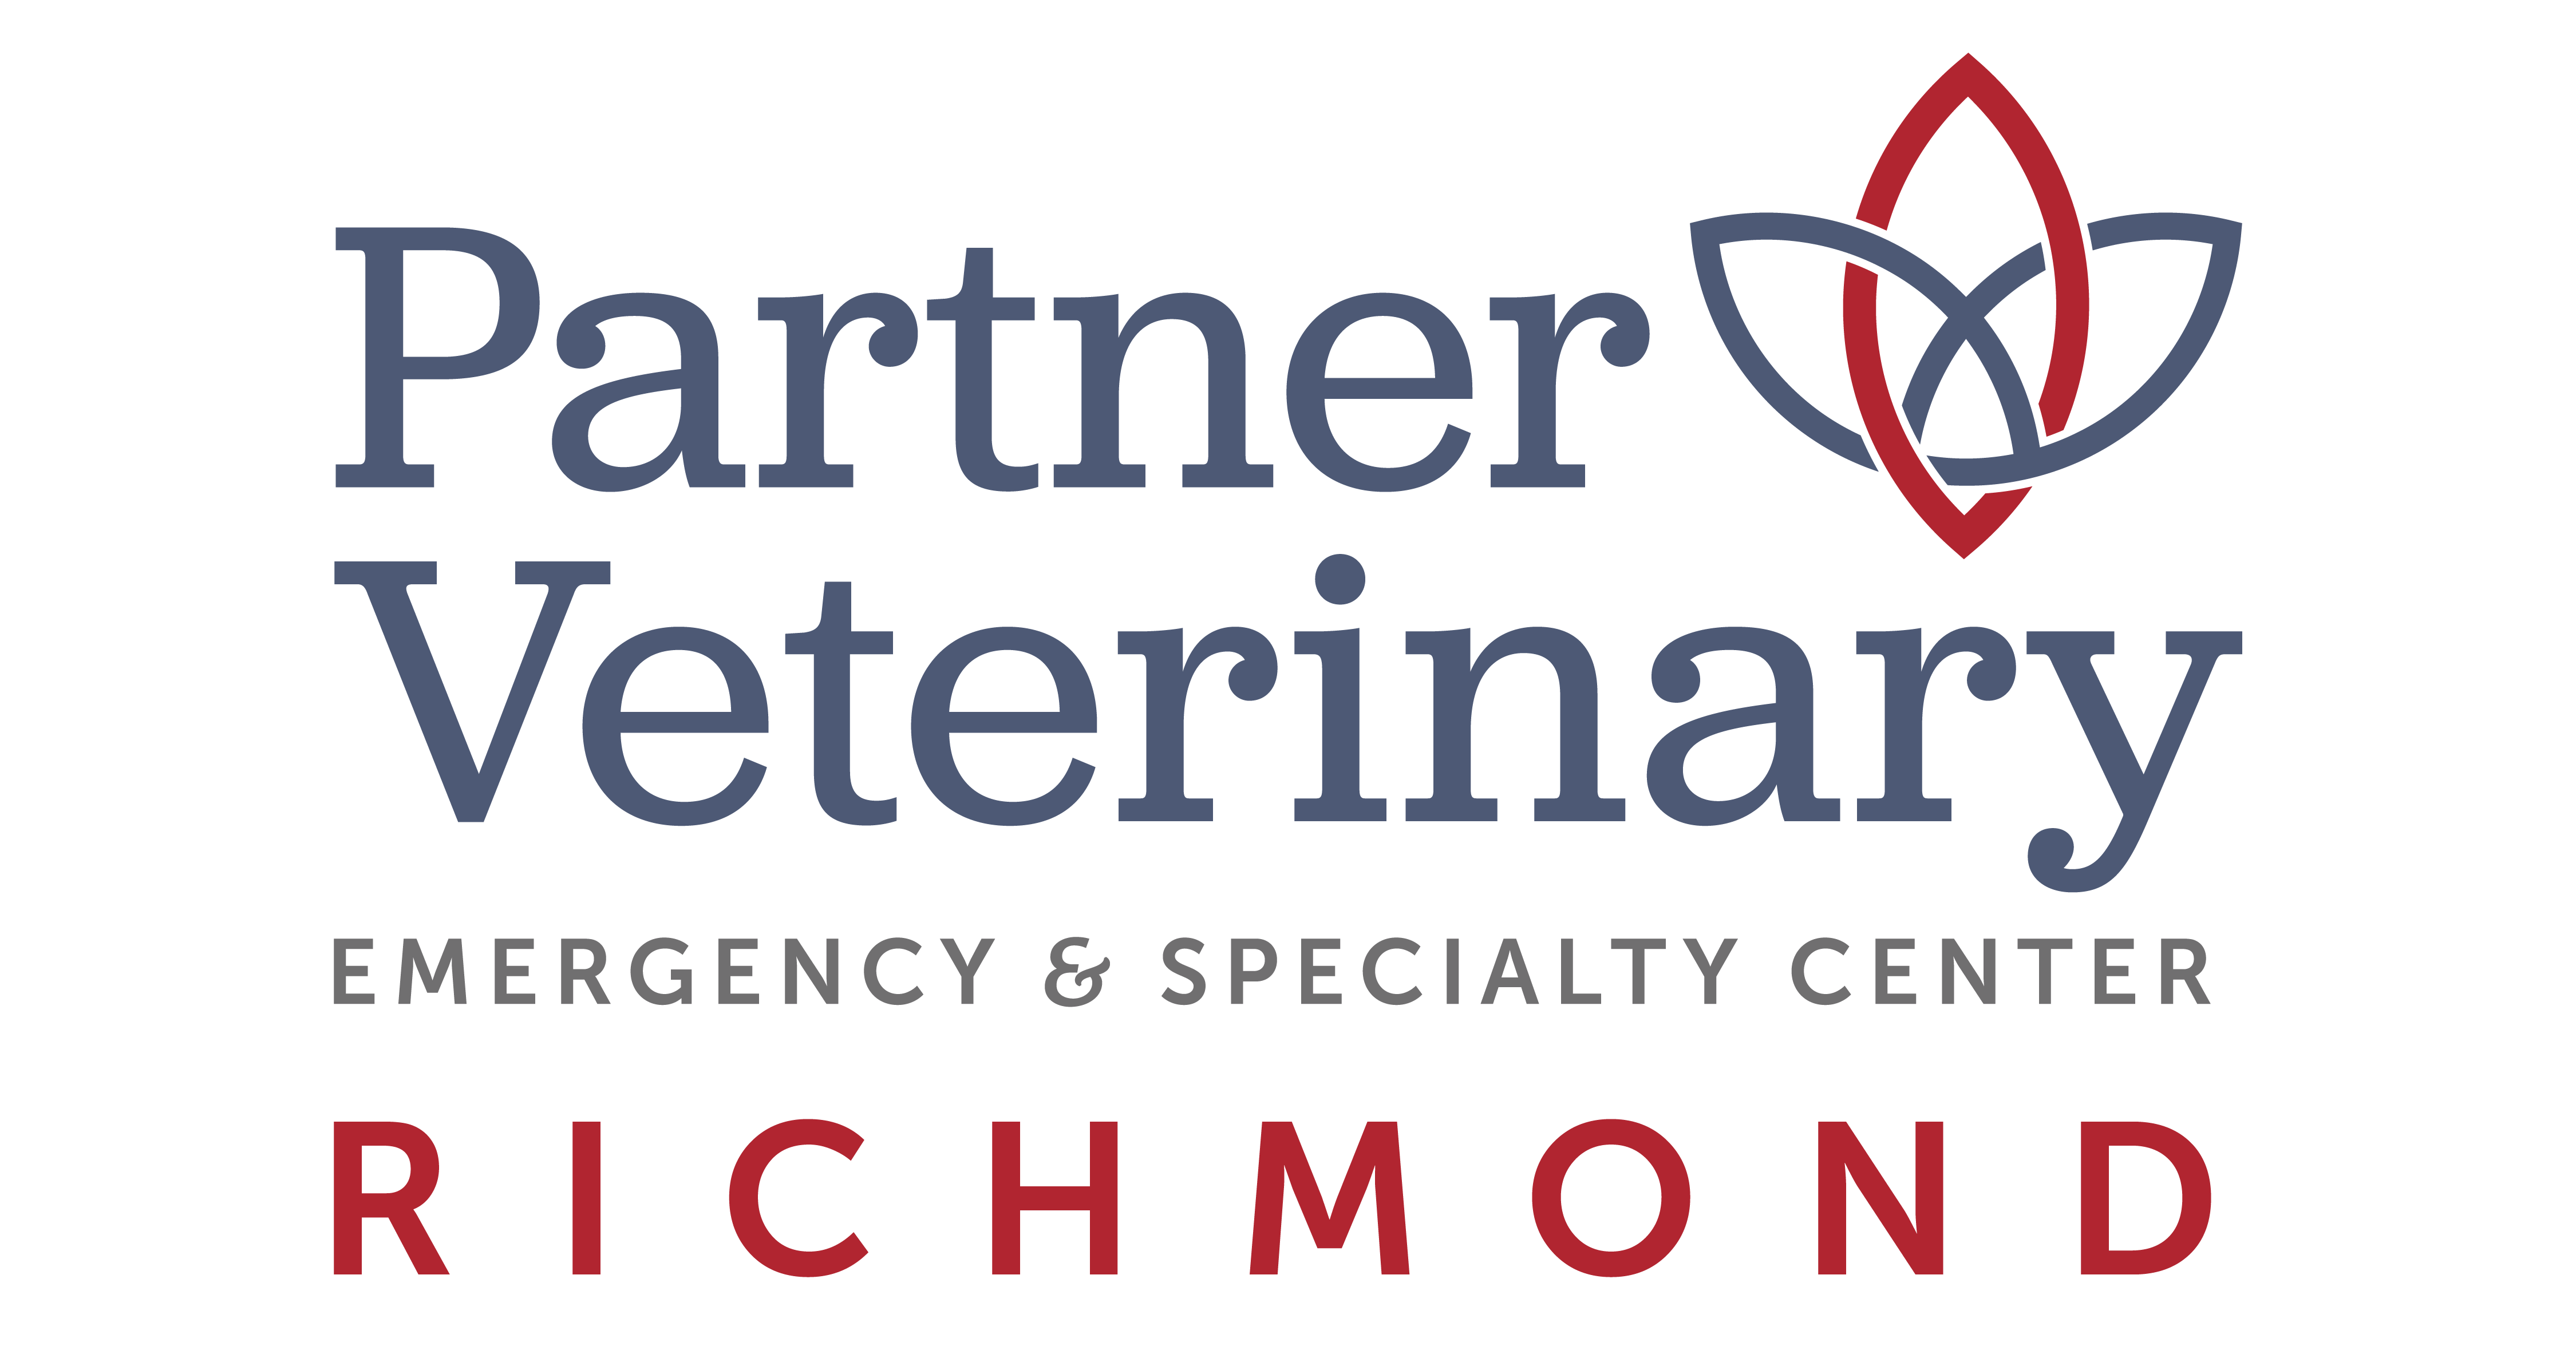 Partner Veterinary Emergency & Specialty Center